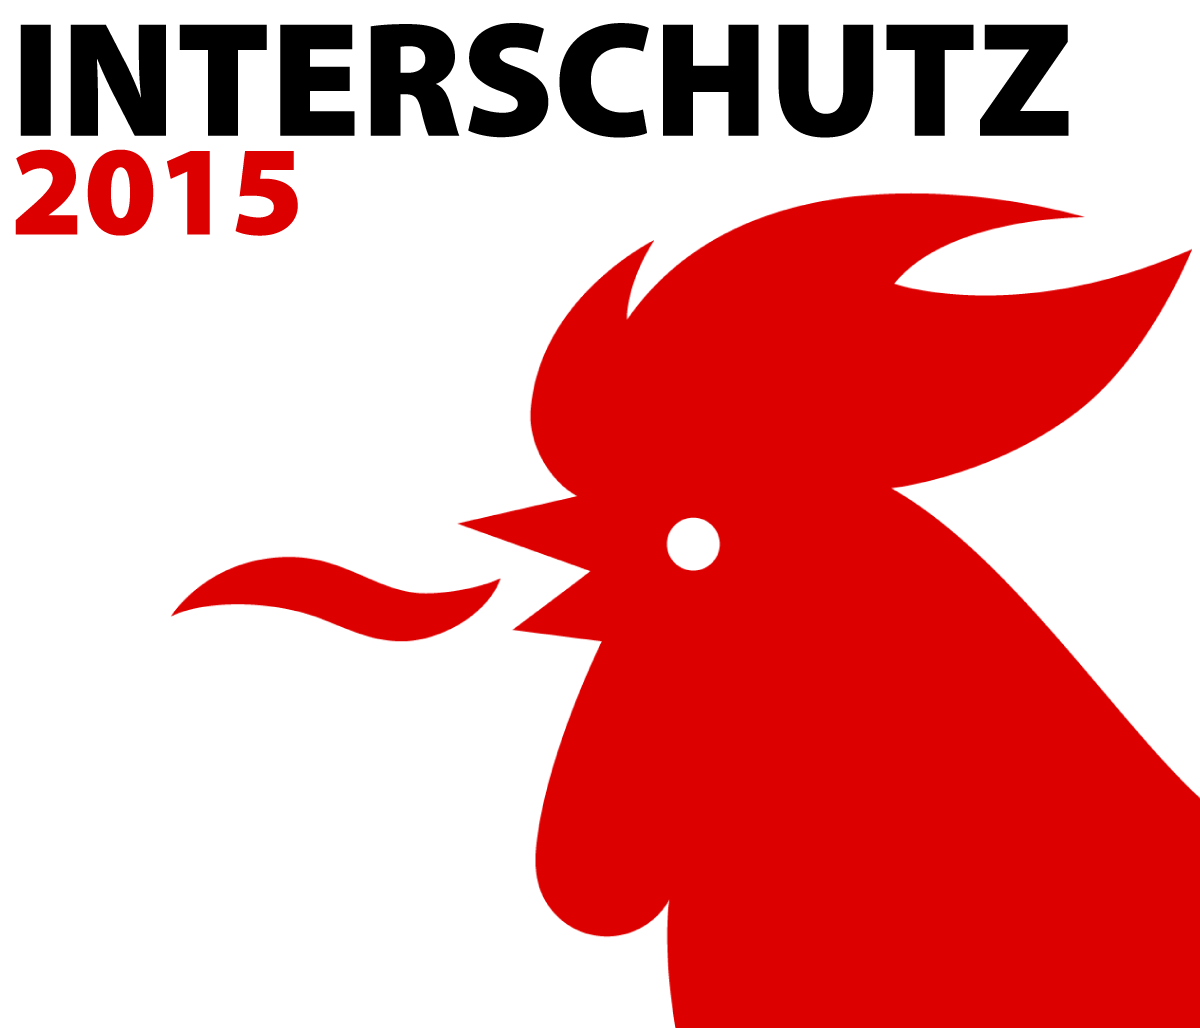 siron compressed air foam news interschutz 2015 highlight